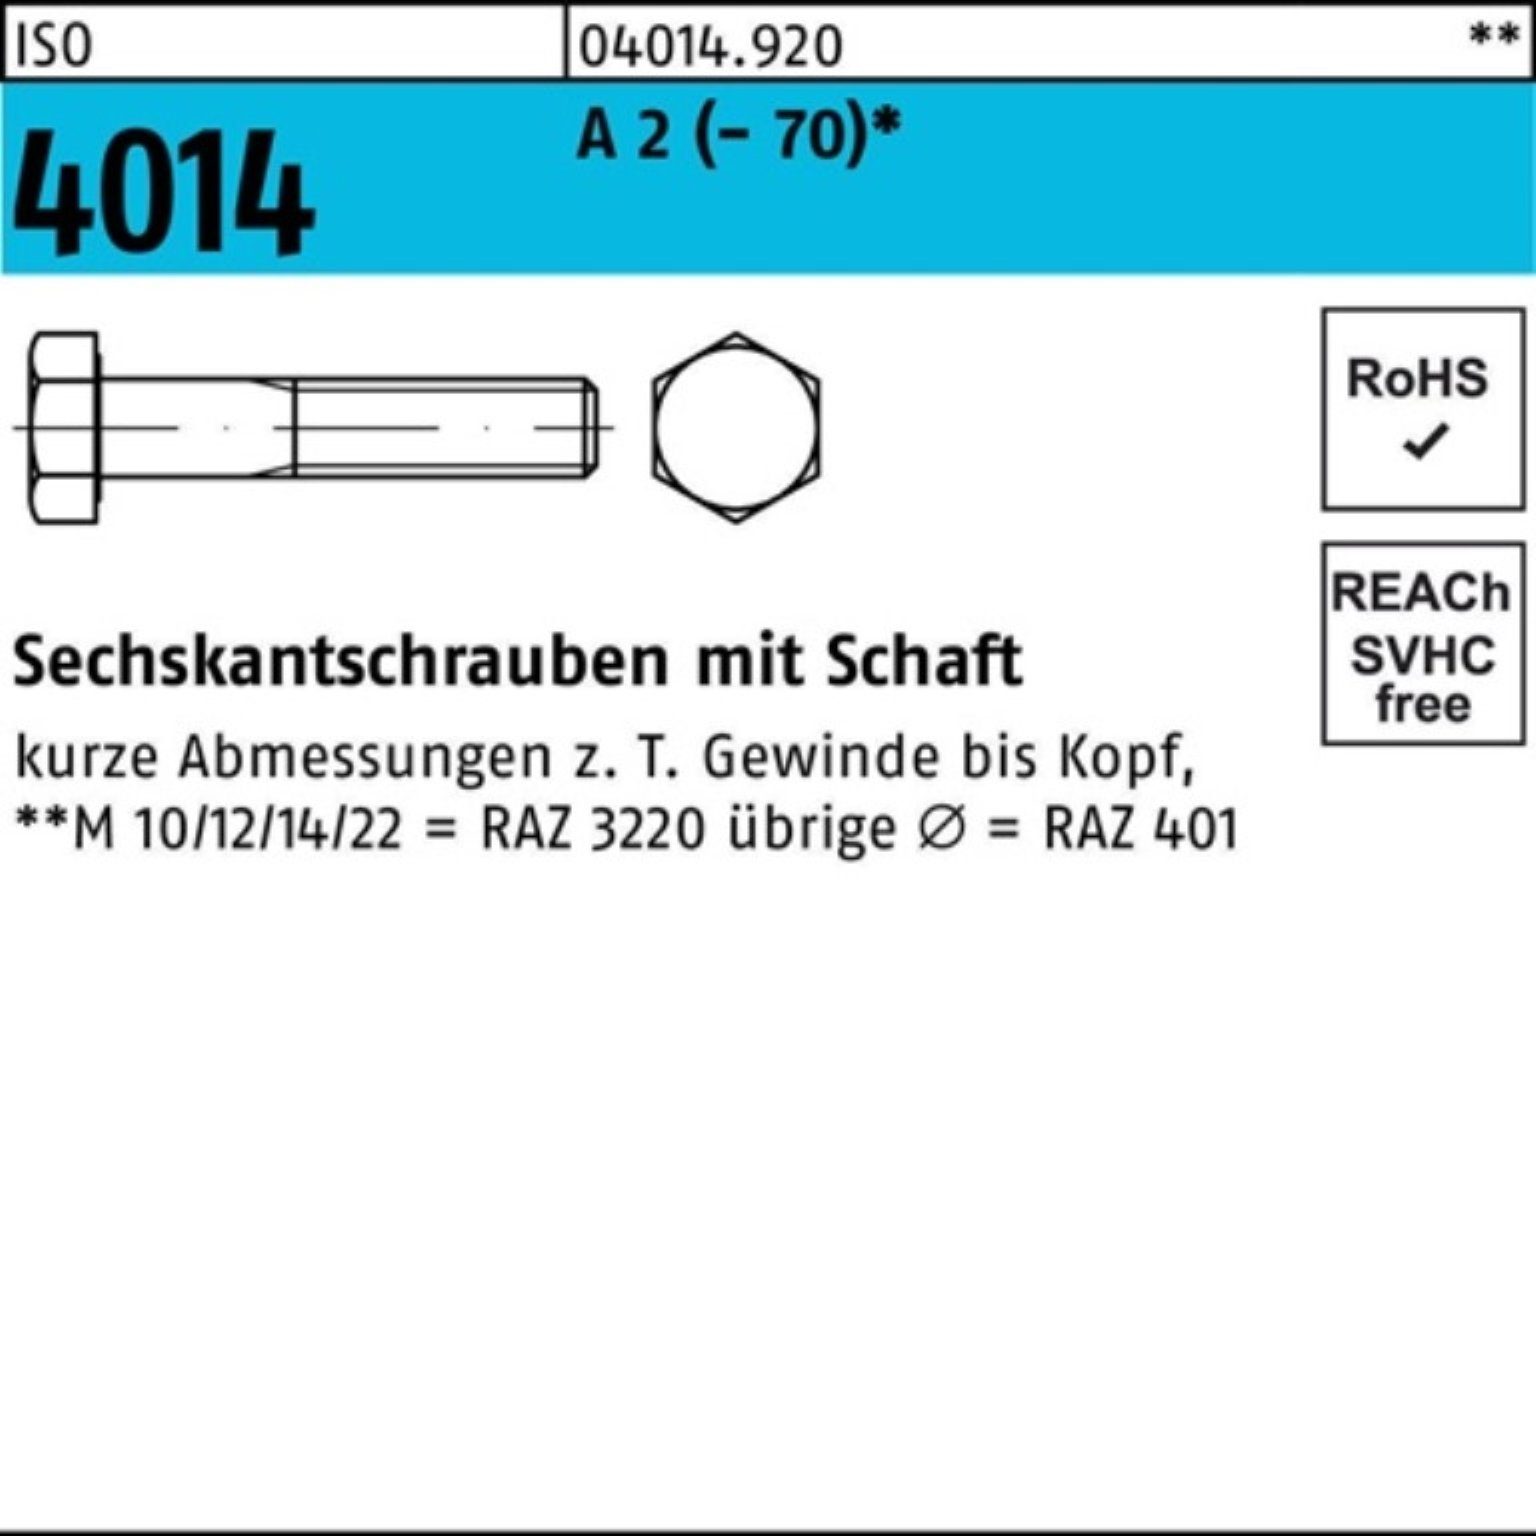 Sechskantschraube (70) M10x A Bufab Pack ISO 50 100 Schaft Sechskantschraube 4014 2 St 100er